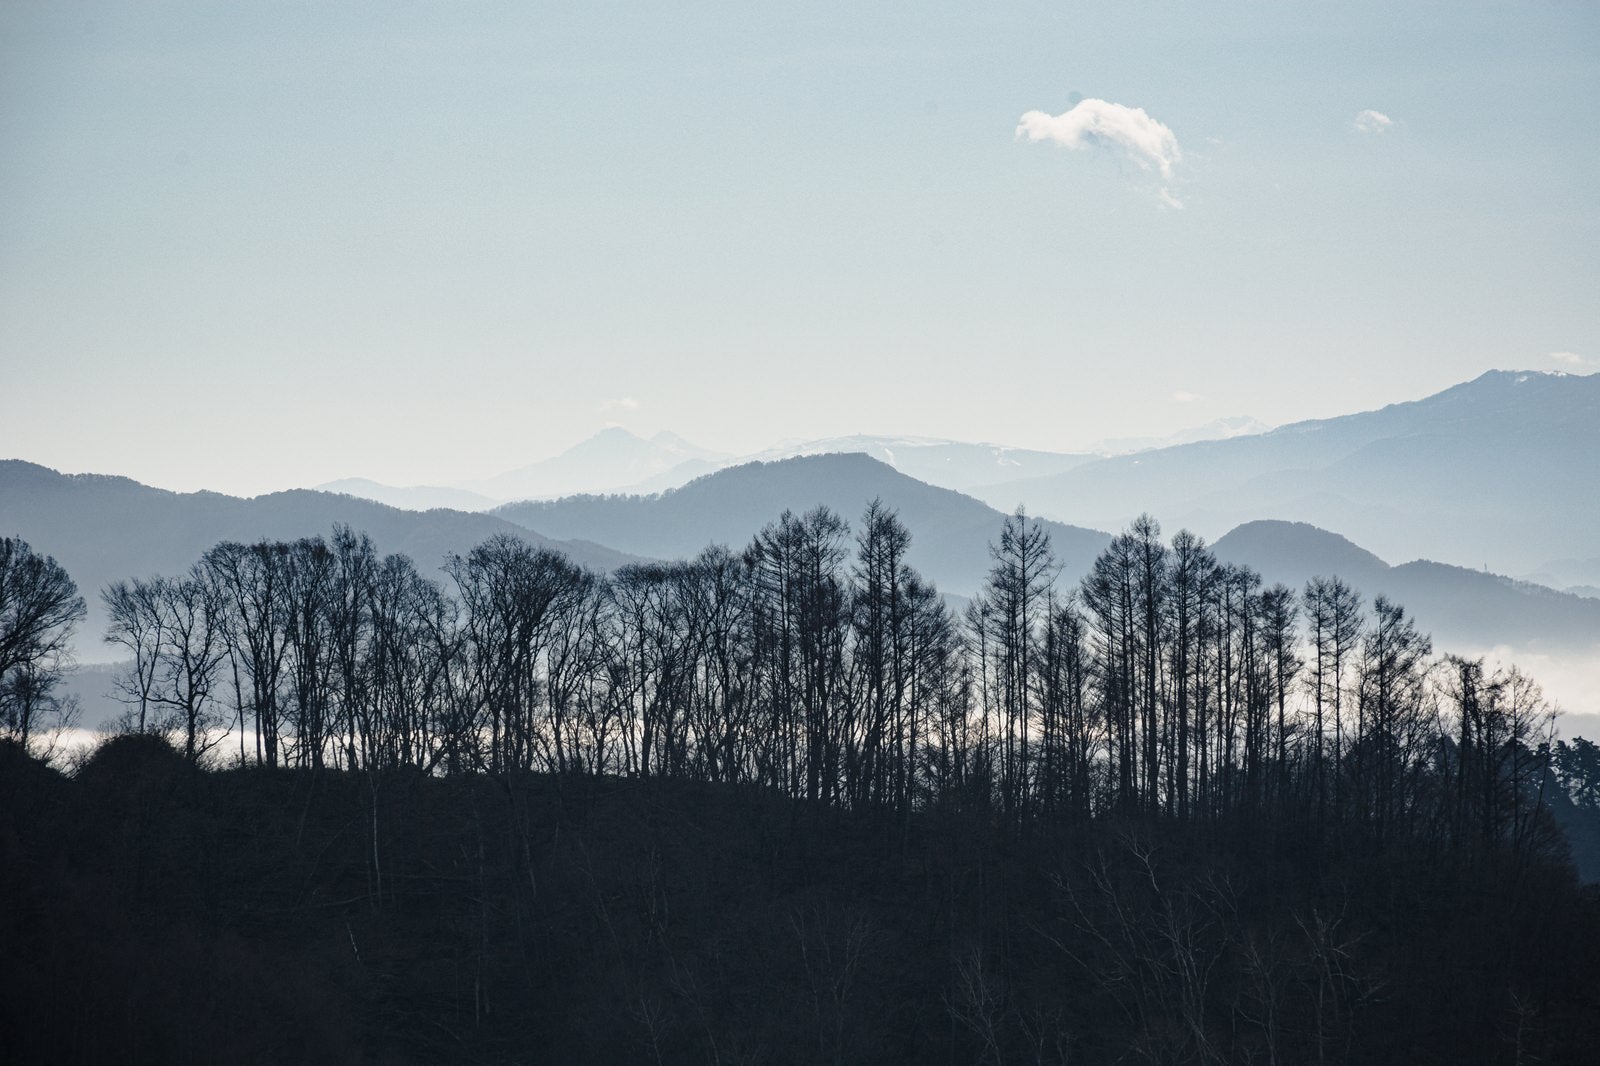 「雲海と山々を背景にして冬枯れの木々が立ち並ぶ葛山城（かつらやまじょう）跡」の写真